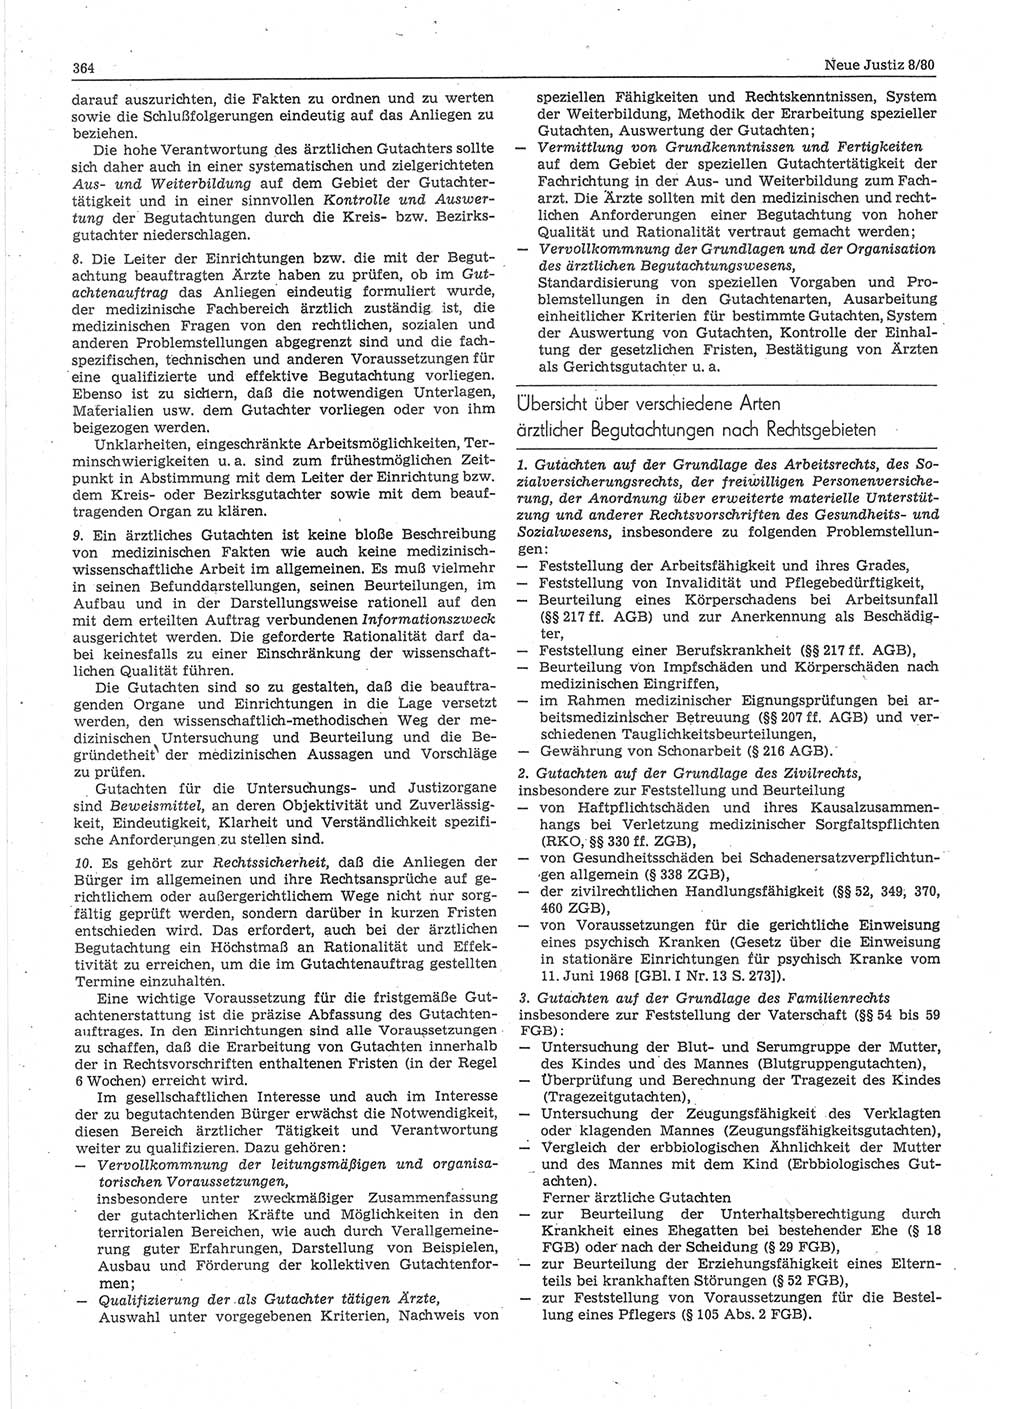 Neue Justiz (NJ), Zeitschrift für sozialistisches Recht und Gesetzlichkeit [Deutsche Demokratische Republik (DDR)], 34. Jahrgang 1980, Seite 364 (NJ DDR 1980, S. 364)